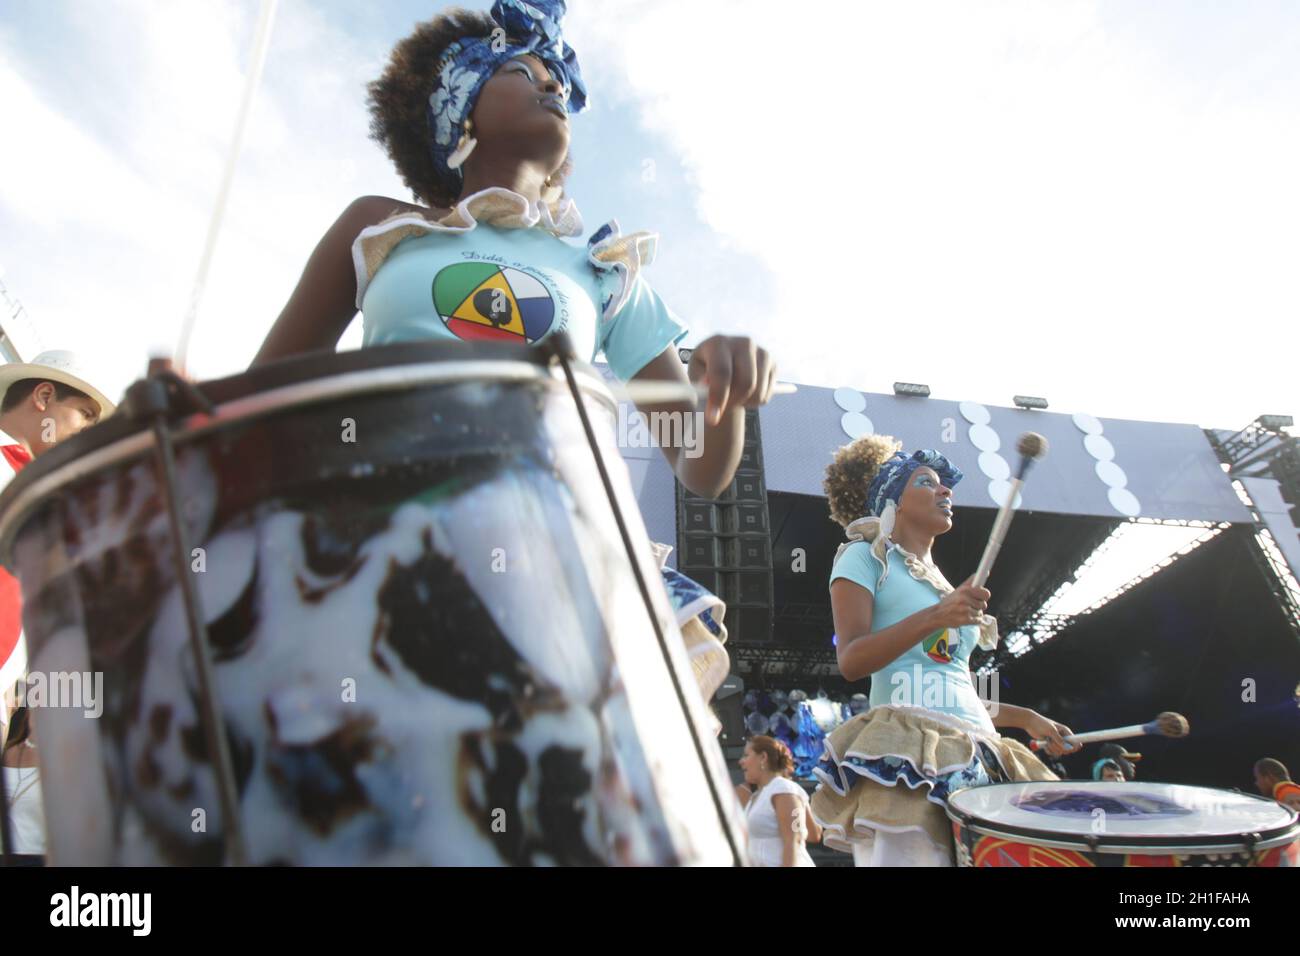 salvador, bahia / brasile - 2 febbraio 2017: I membri della Dida Band, percussionisti sono formati da donne, visti durante la performance nella città di Salvador. * Foto Stock